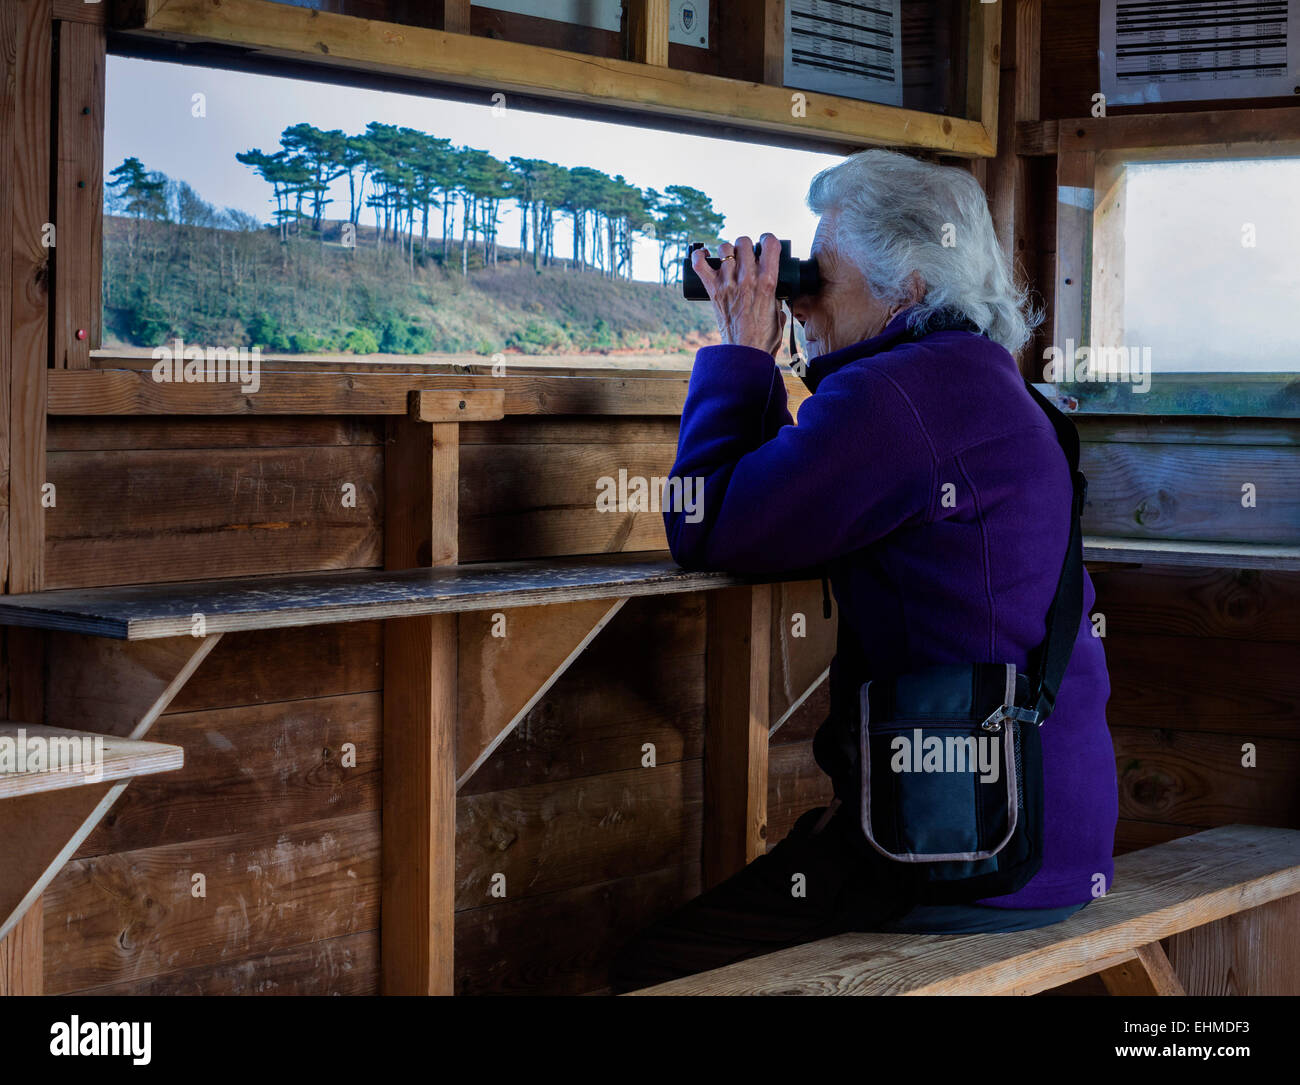 Coppia Lady Birdwatching in un nascondere o "cieco" sulla Lontra di fiume, Budleigh Salterton, East Devon, Inghilterra, Regno Unito. Foto Stock